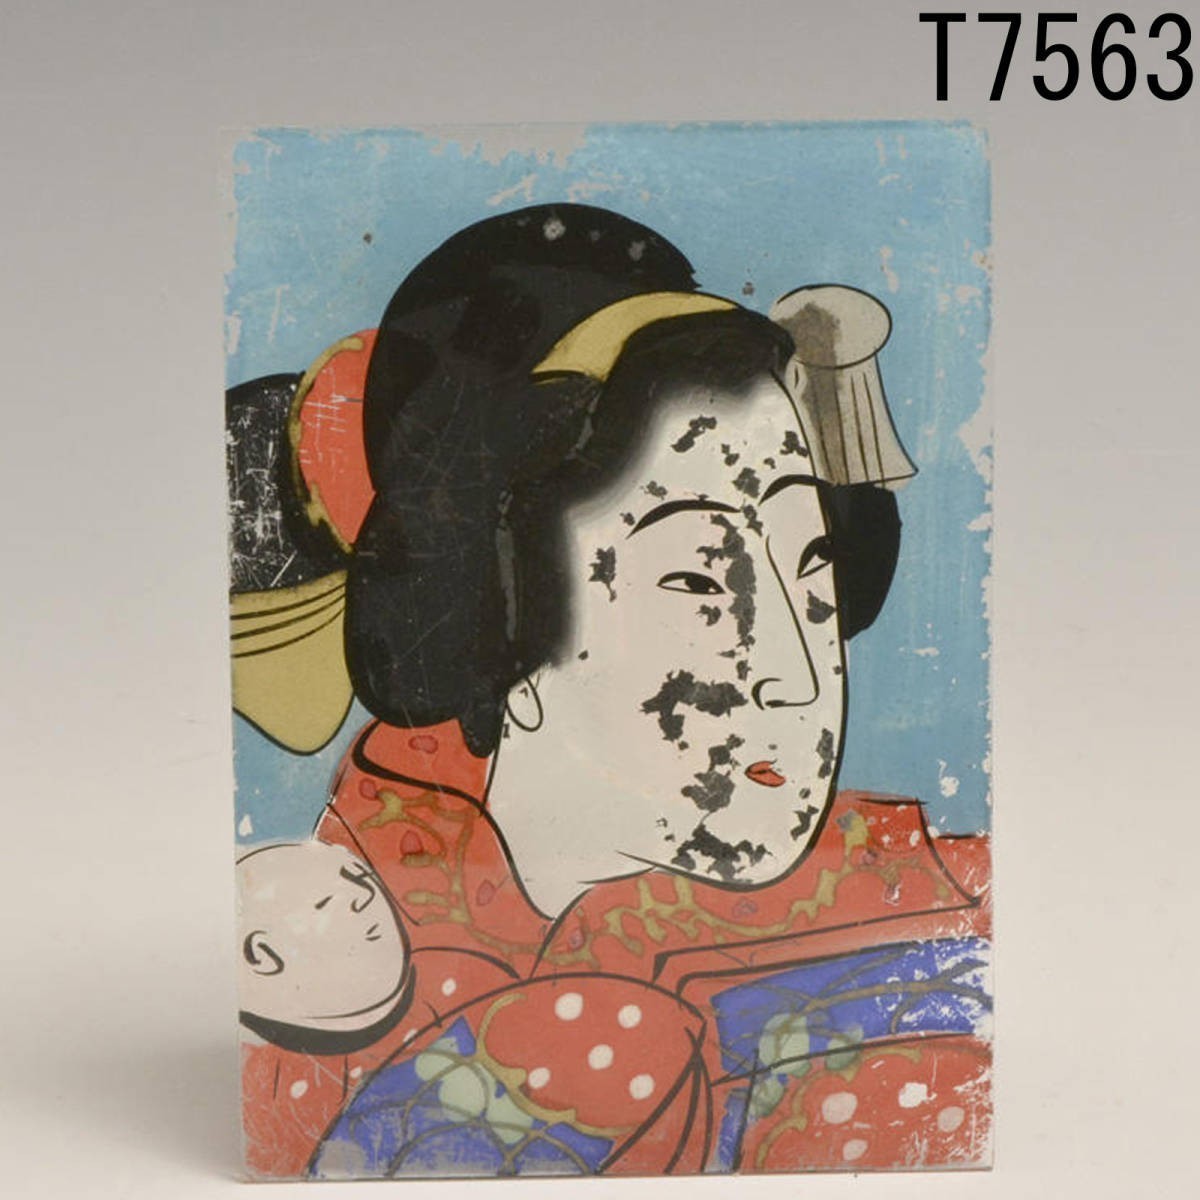 T07563 Glass painting Ukiyo-e: Genuine, Painting, Ukiyo-e, Prints, Portrait of a beautiful woman